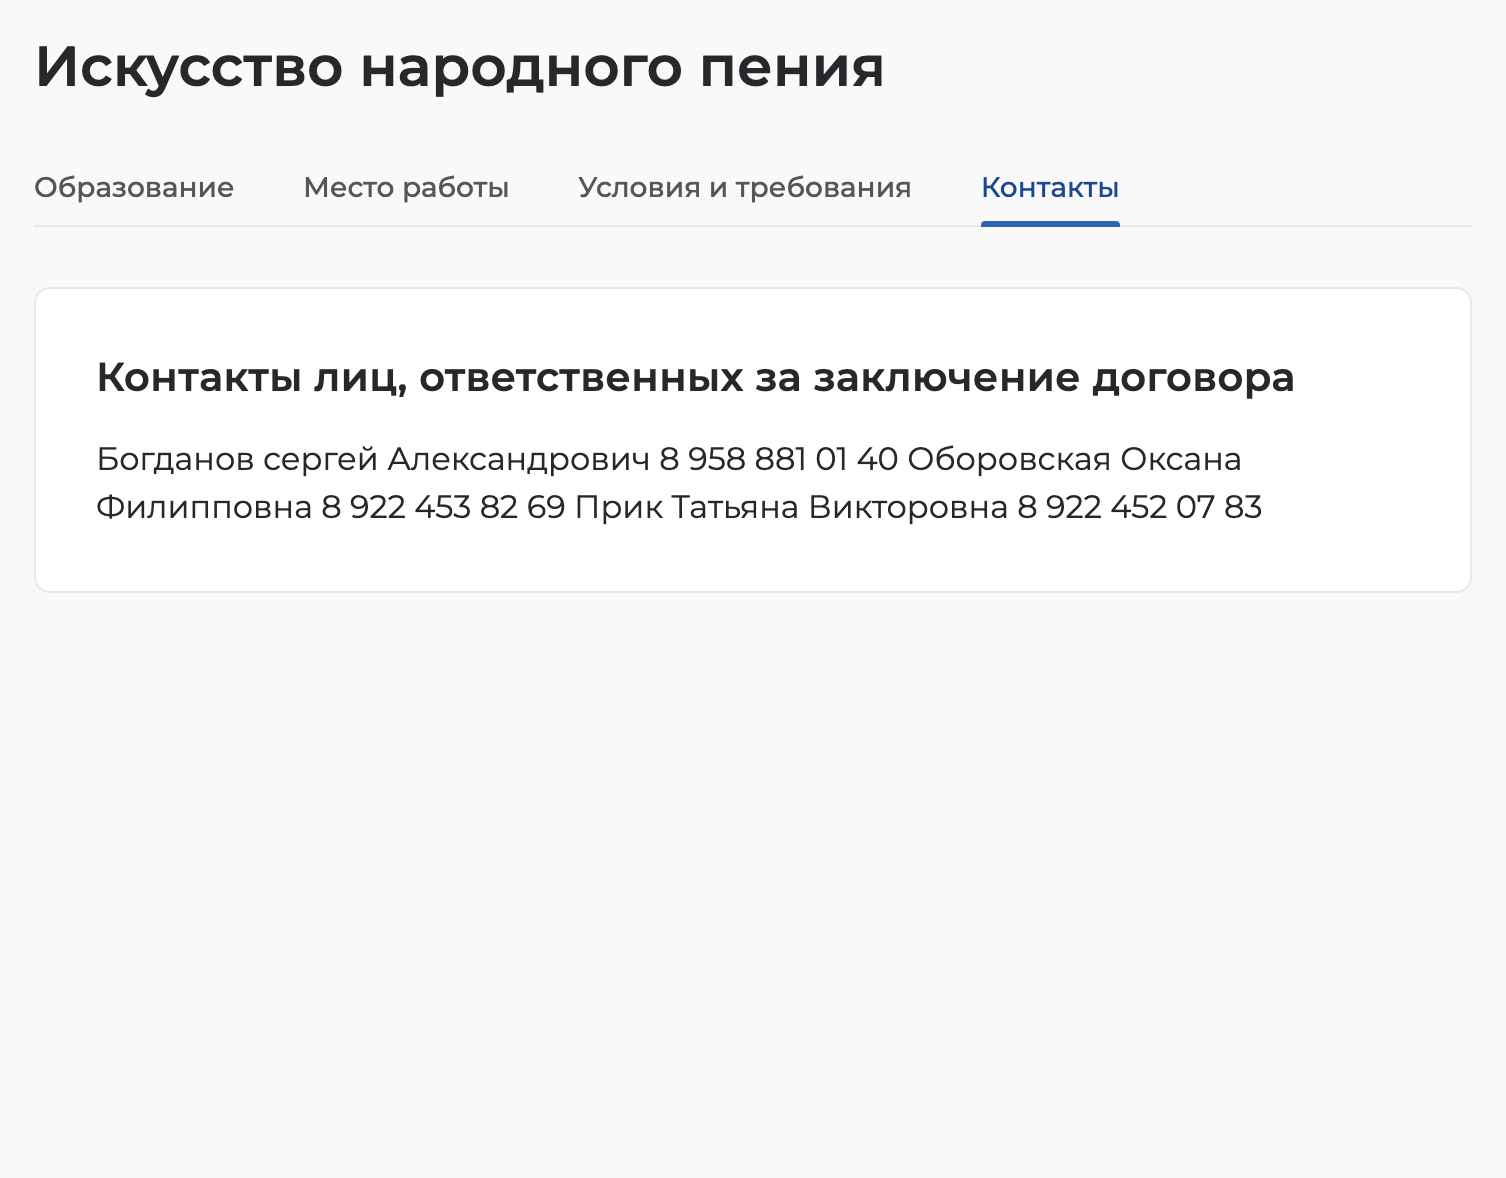 На вкладке «Контакты» номера телефонов ответственных лиц и их электронные почты. Источник: trudvsem.ru